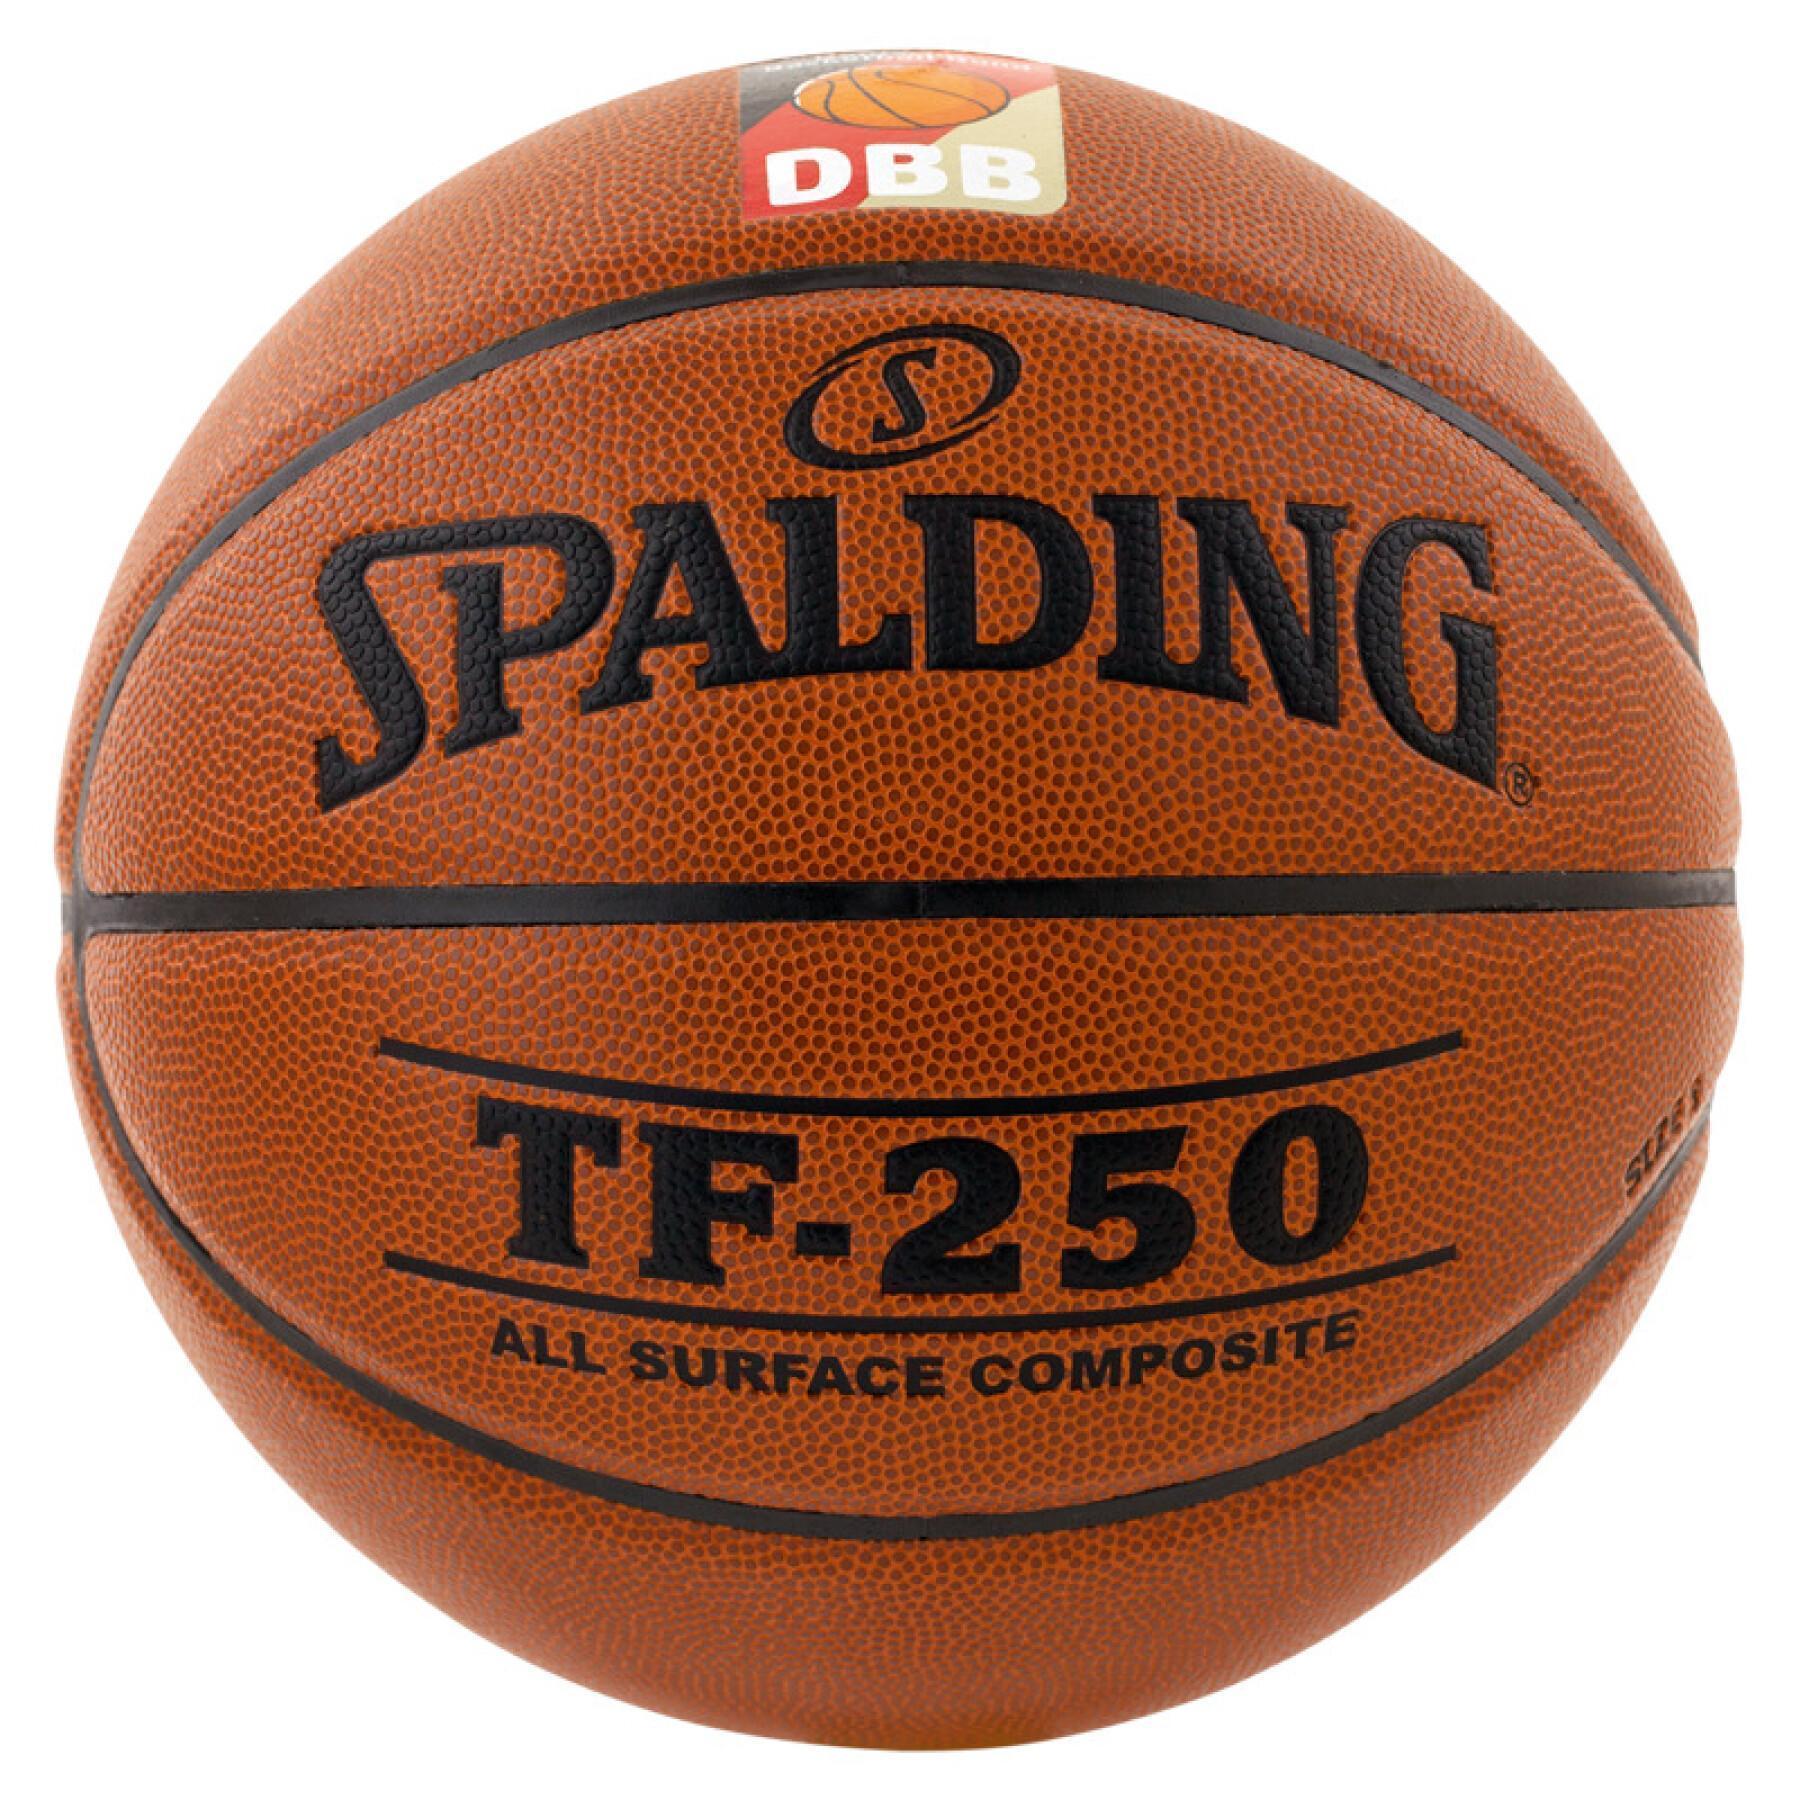 Globo Spalding DBB Tf250 (74-592z)